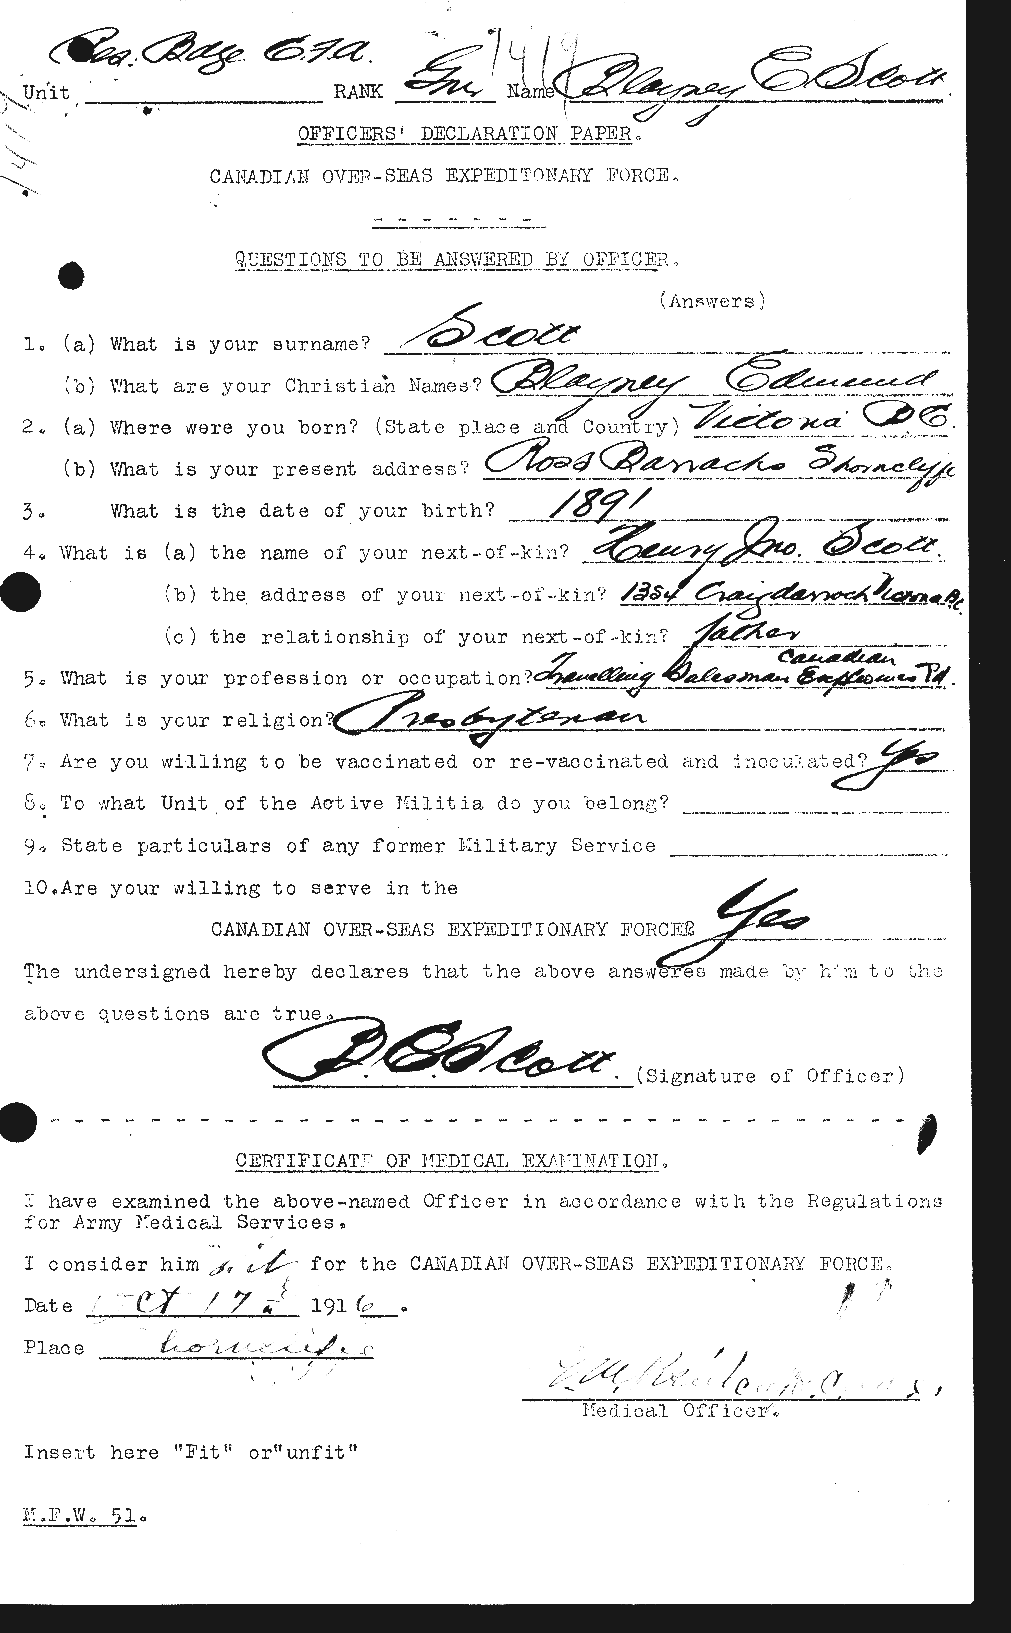 Dossiers du Personnel de la Première Guerre mondiale - CEC 086213a